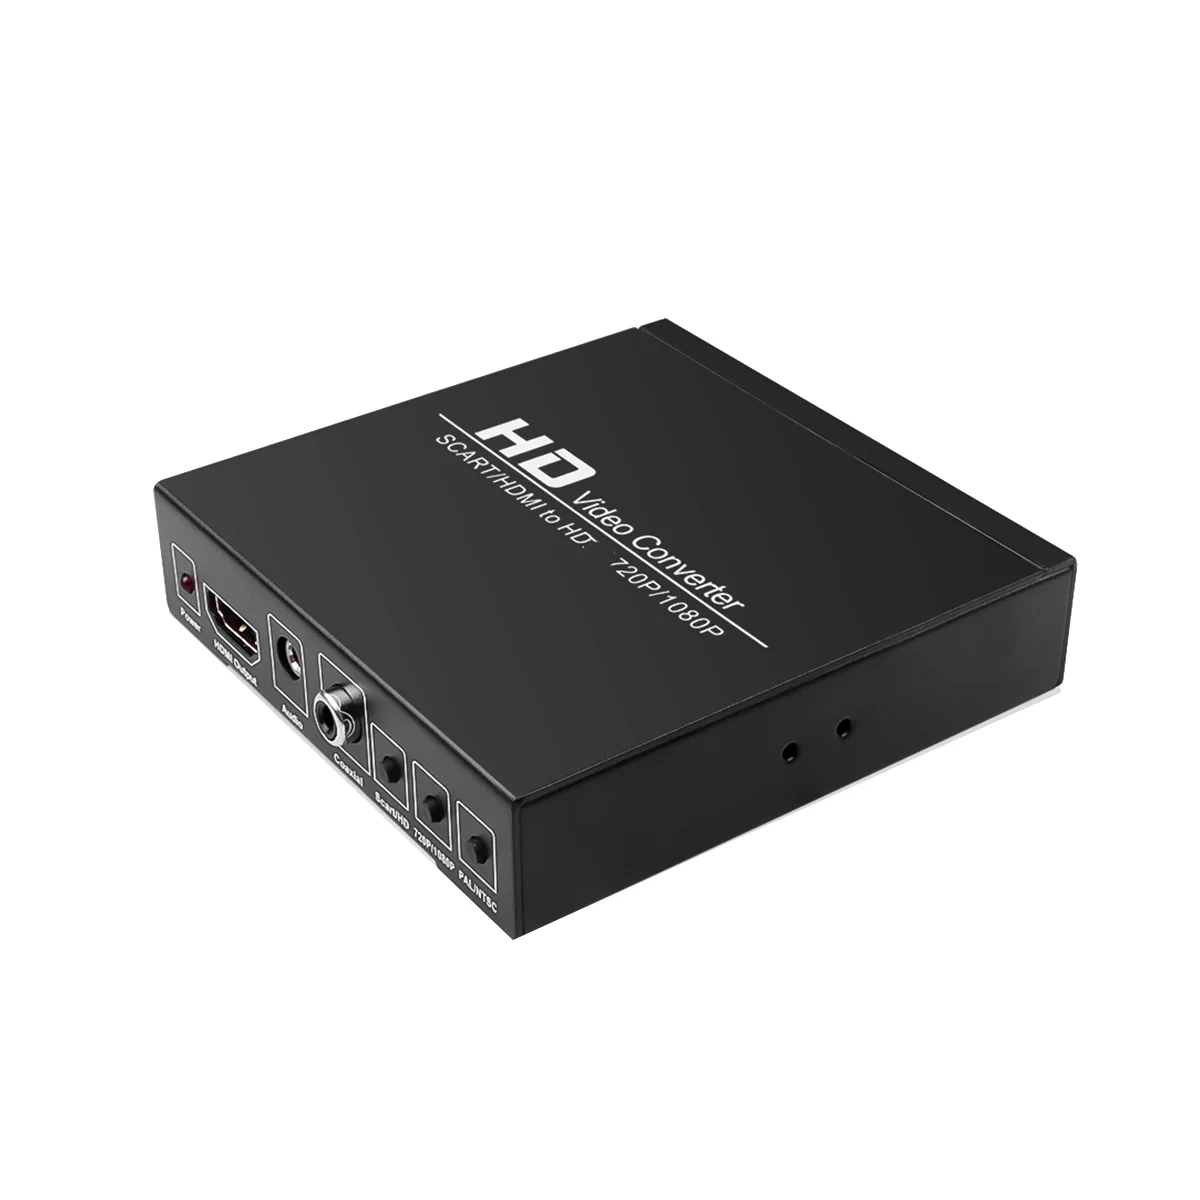 

Цифровой видеоконвертер Full HD 1080P, видеоадаптер высокой четкости SCART в HDMI-совместимый адаптер для фотографий